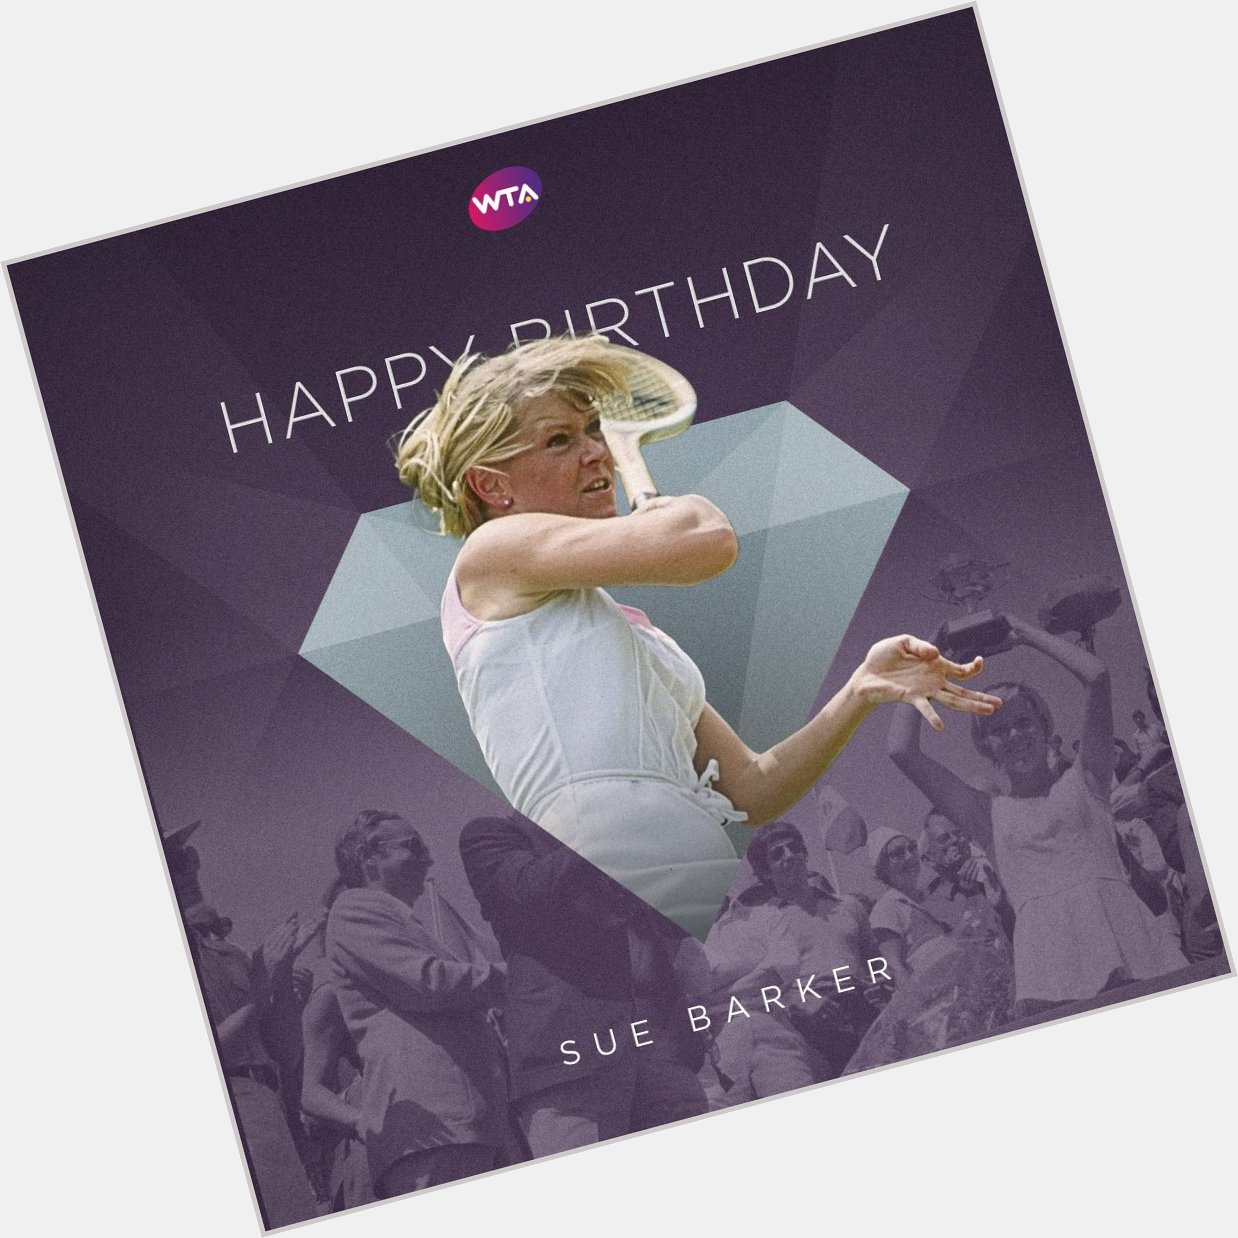 Happy birthday, Sue Barker!  